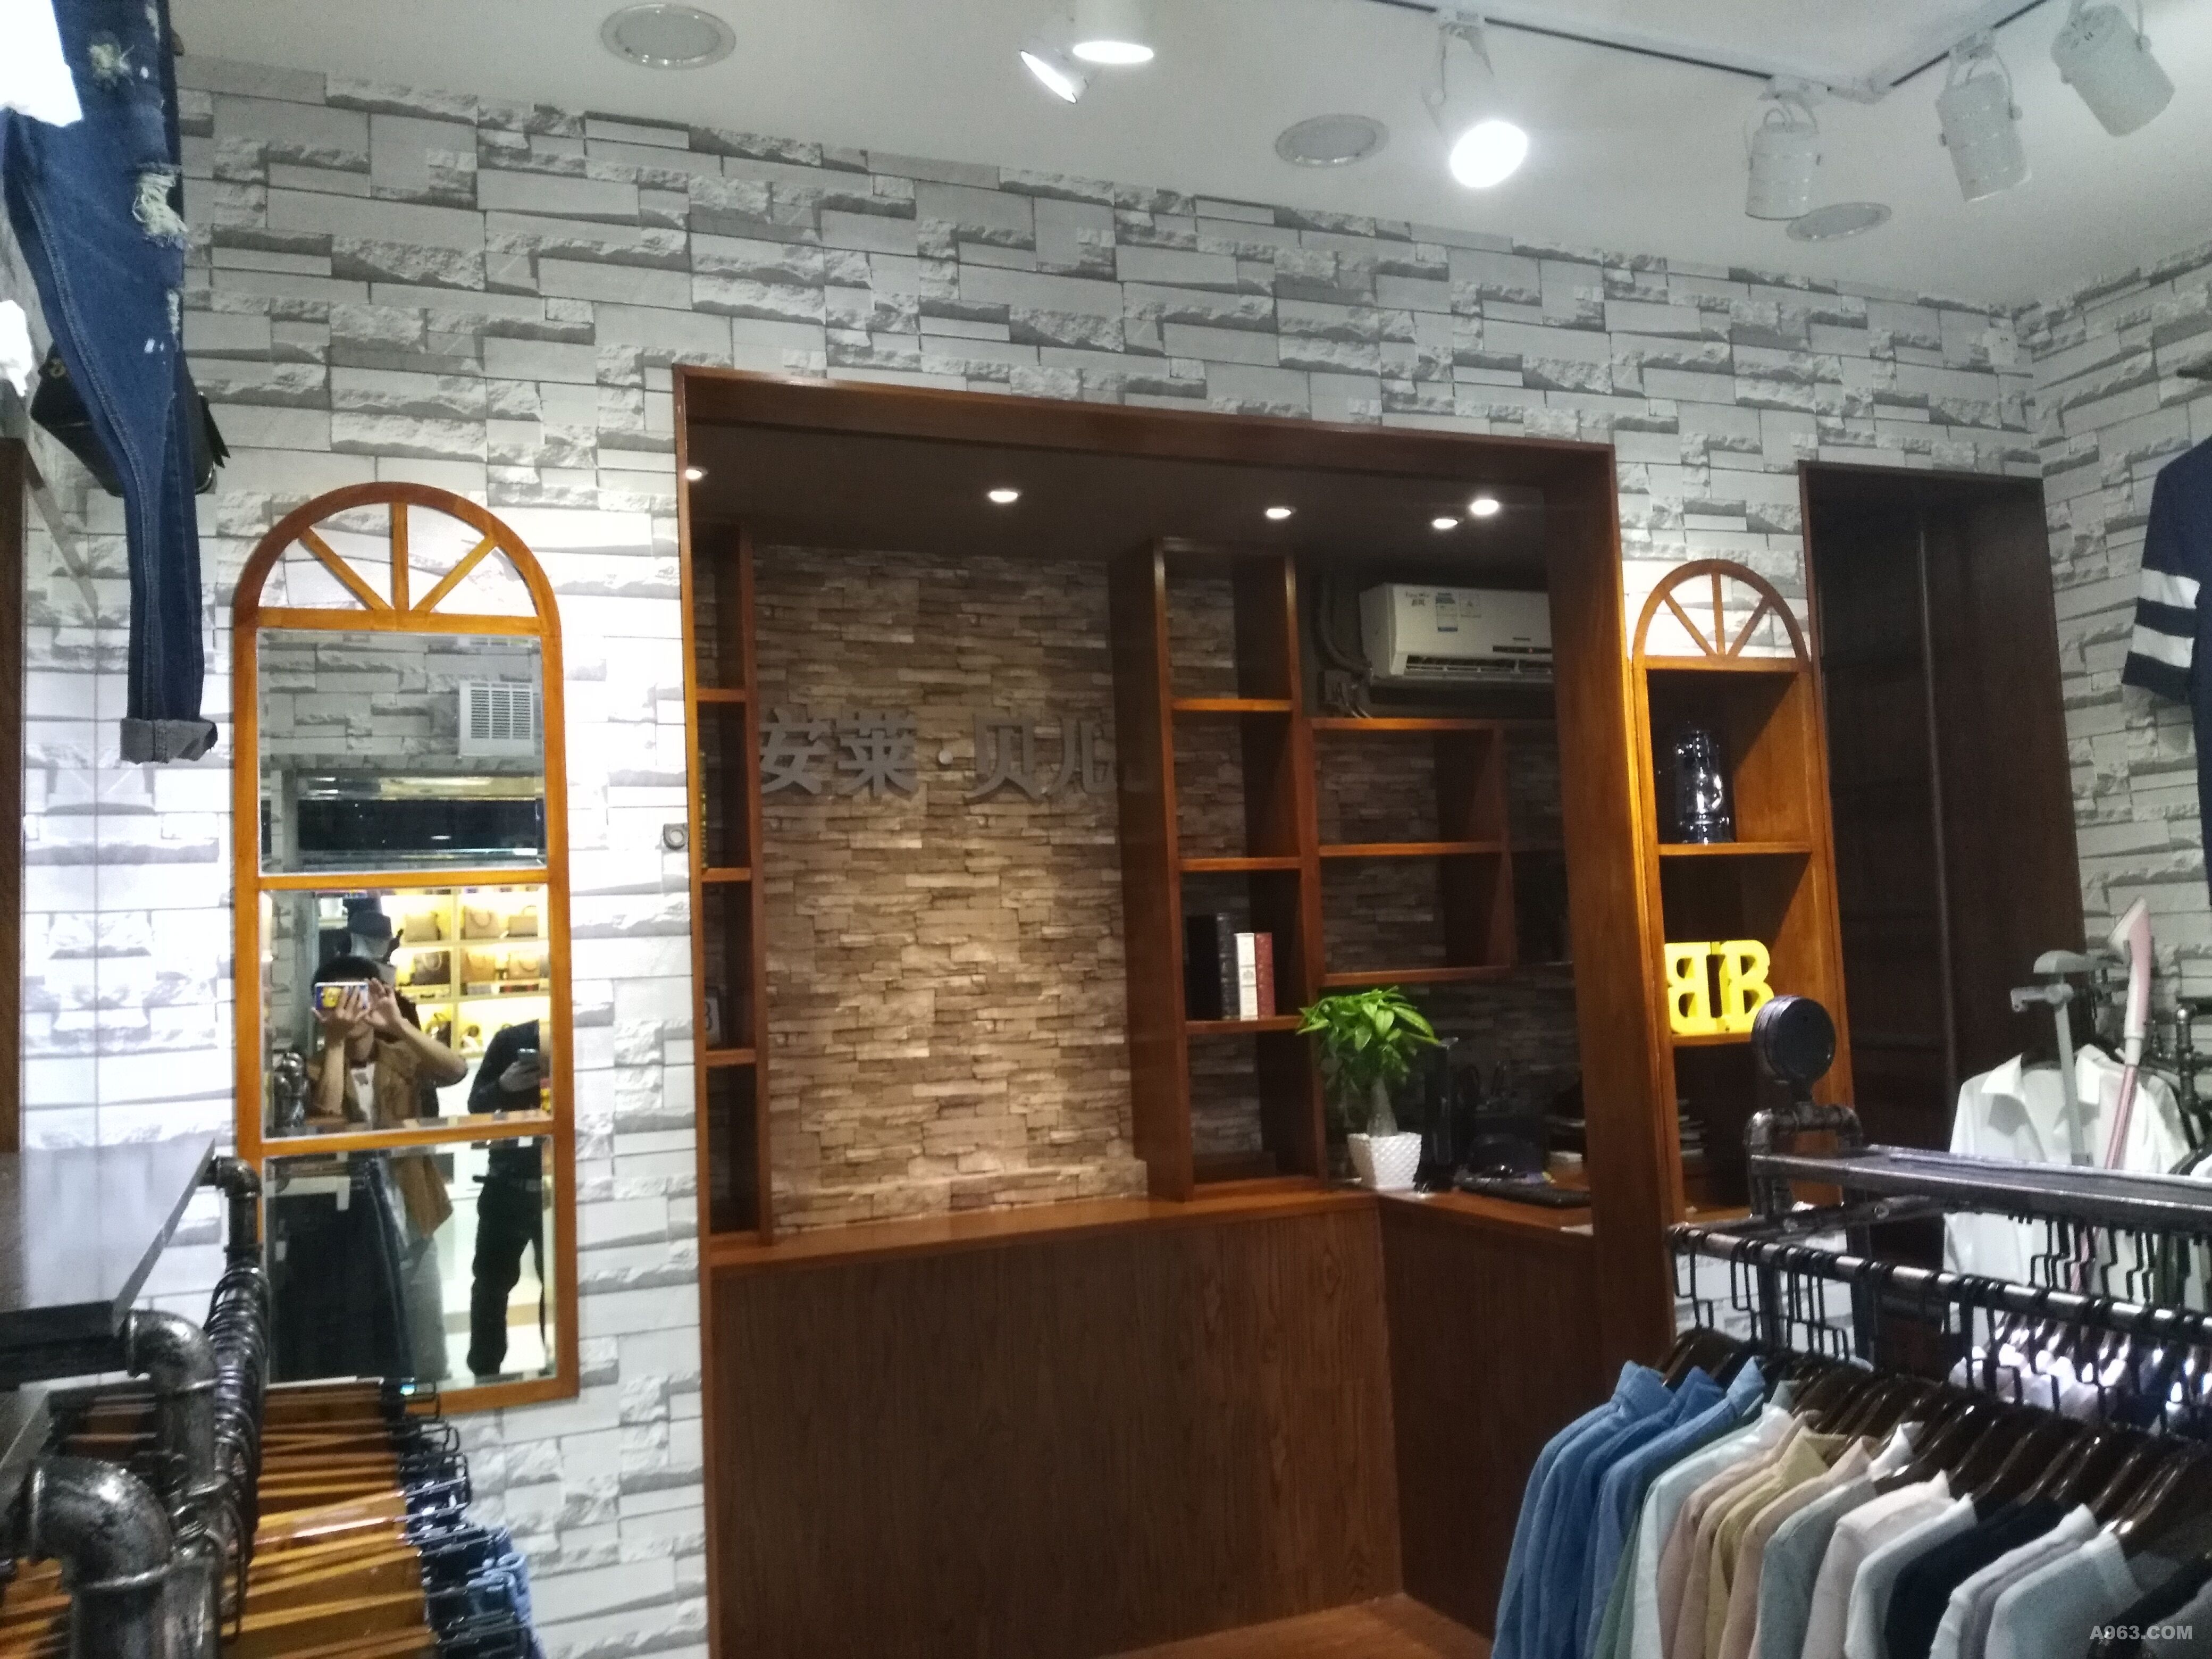 惠州数码街南段2楼t012韩版服装店 尚品饰家专业商铺 店面设计 品牌